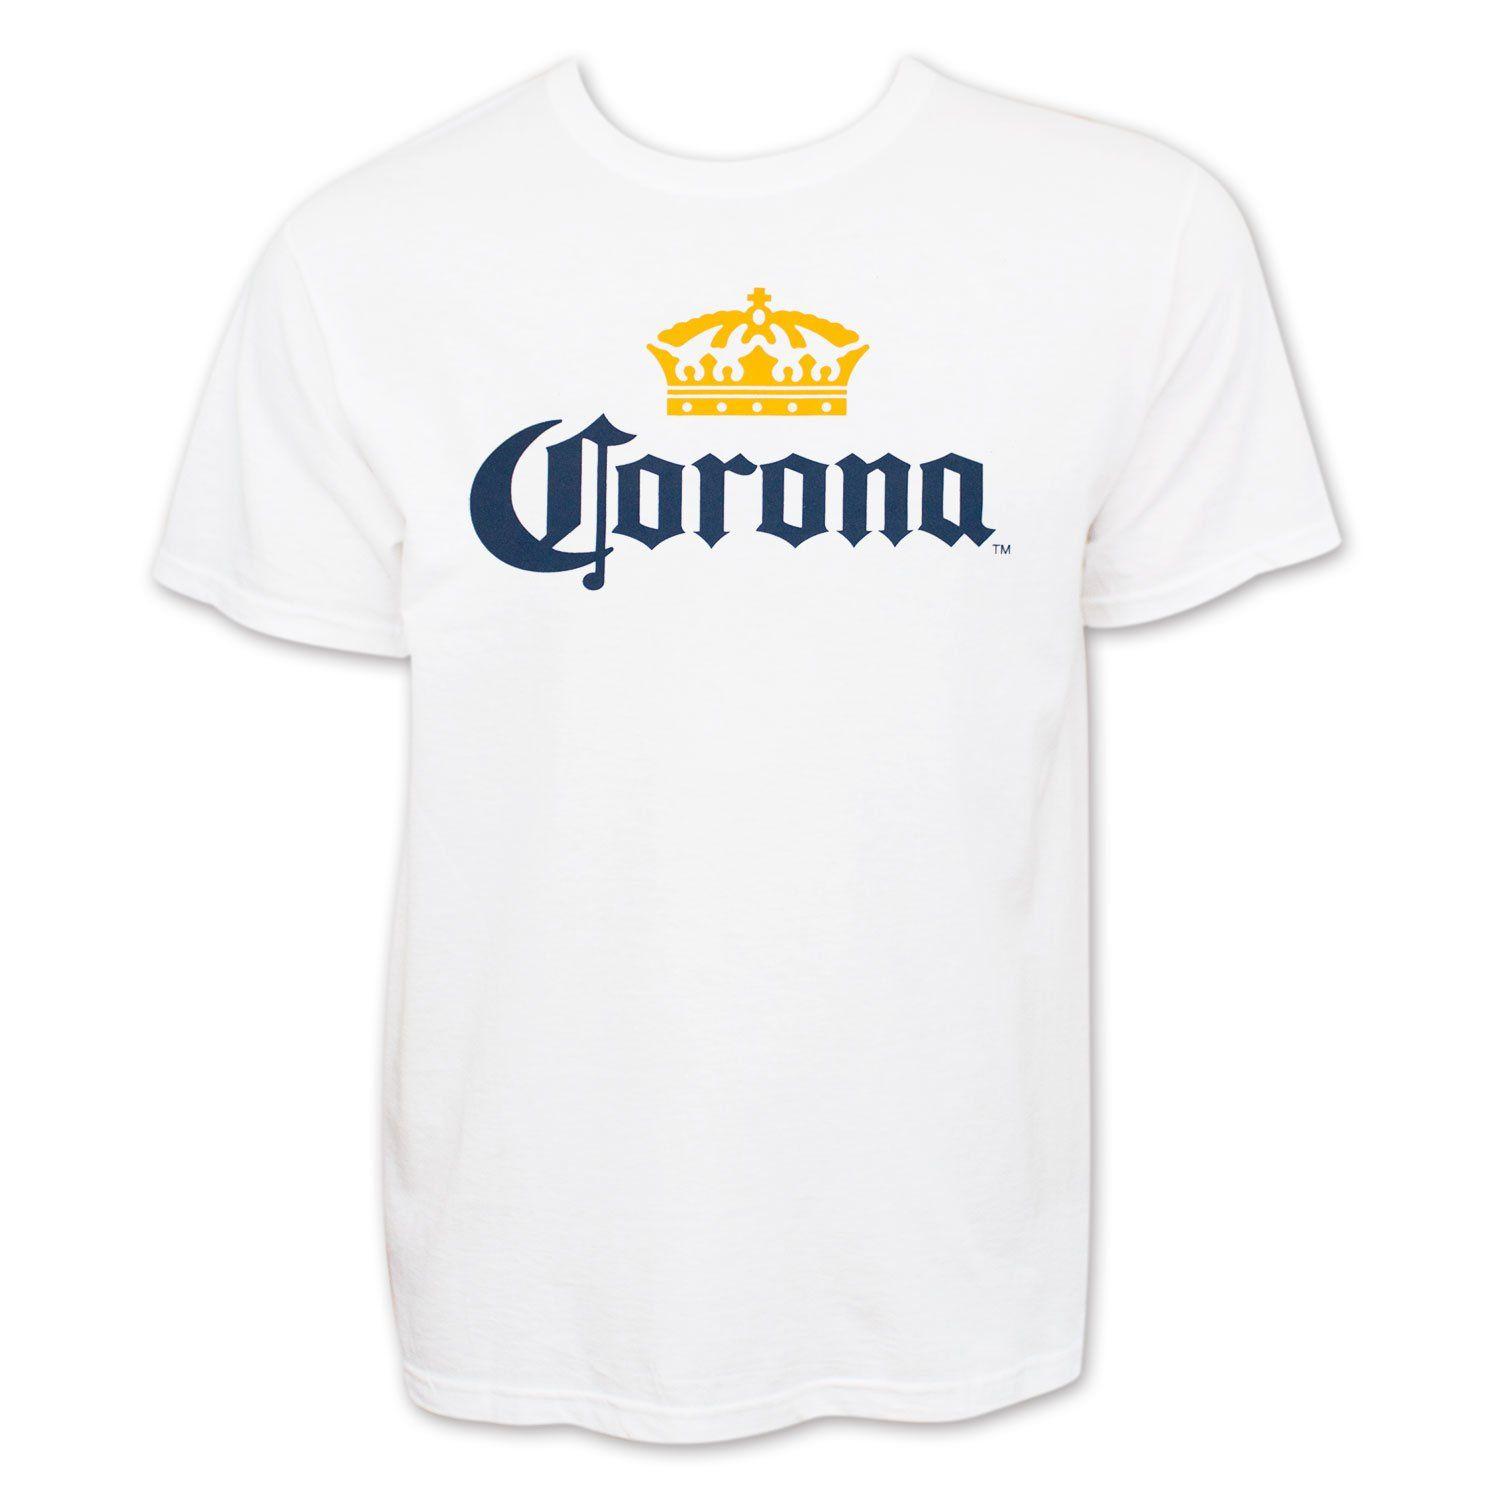 Corona Extra Logo - Amazon.com: Corona Extra Men's Beer Logo T-Shirt: Clothing